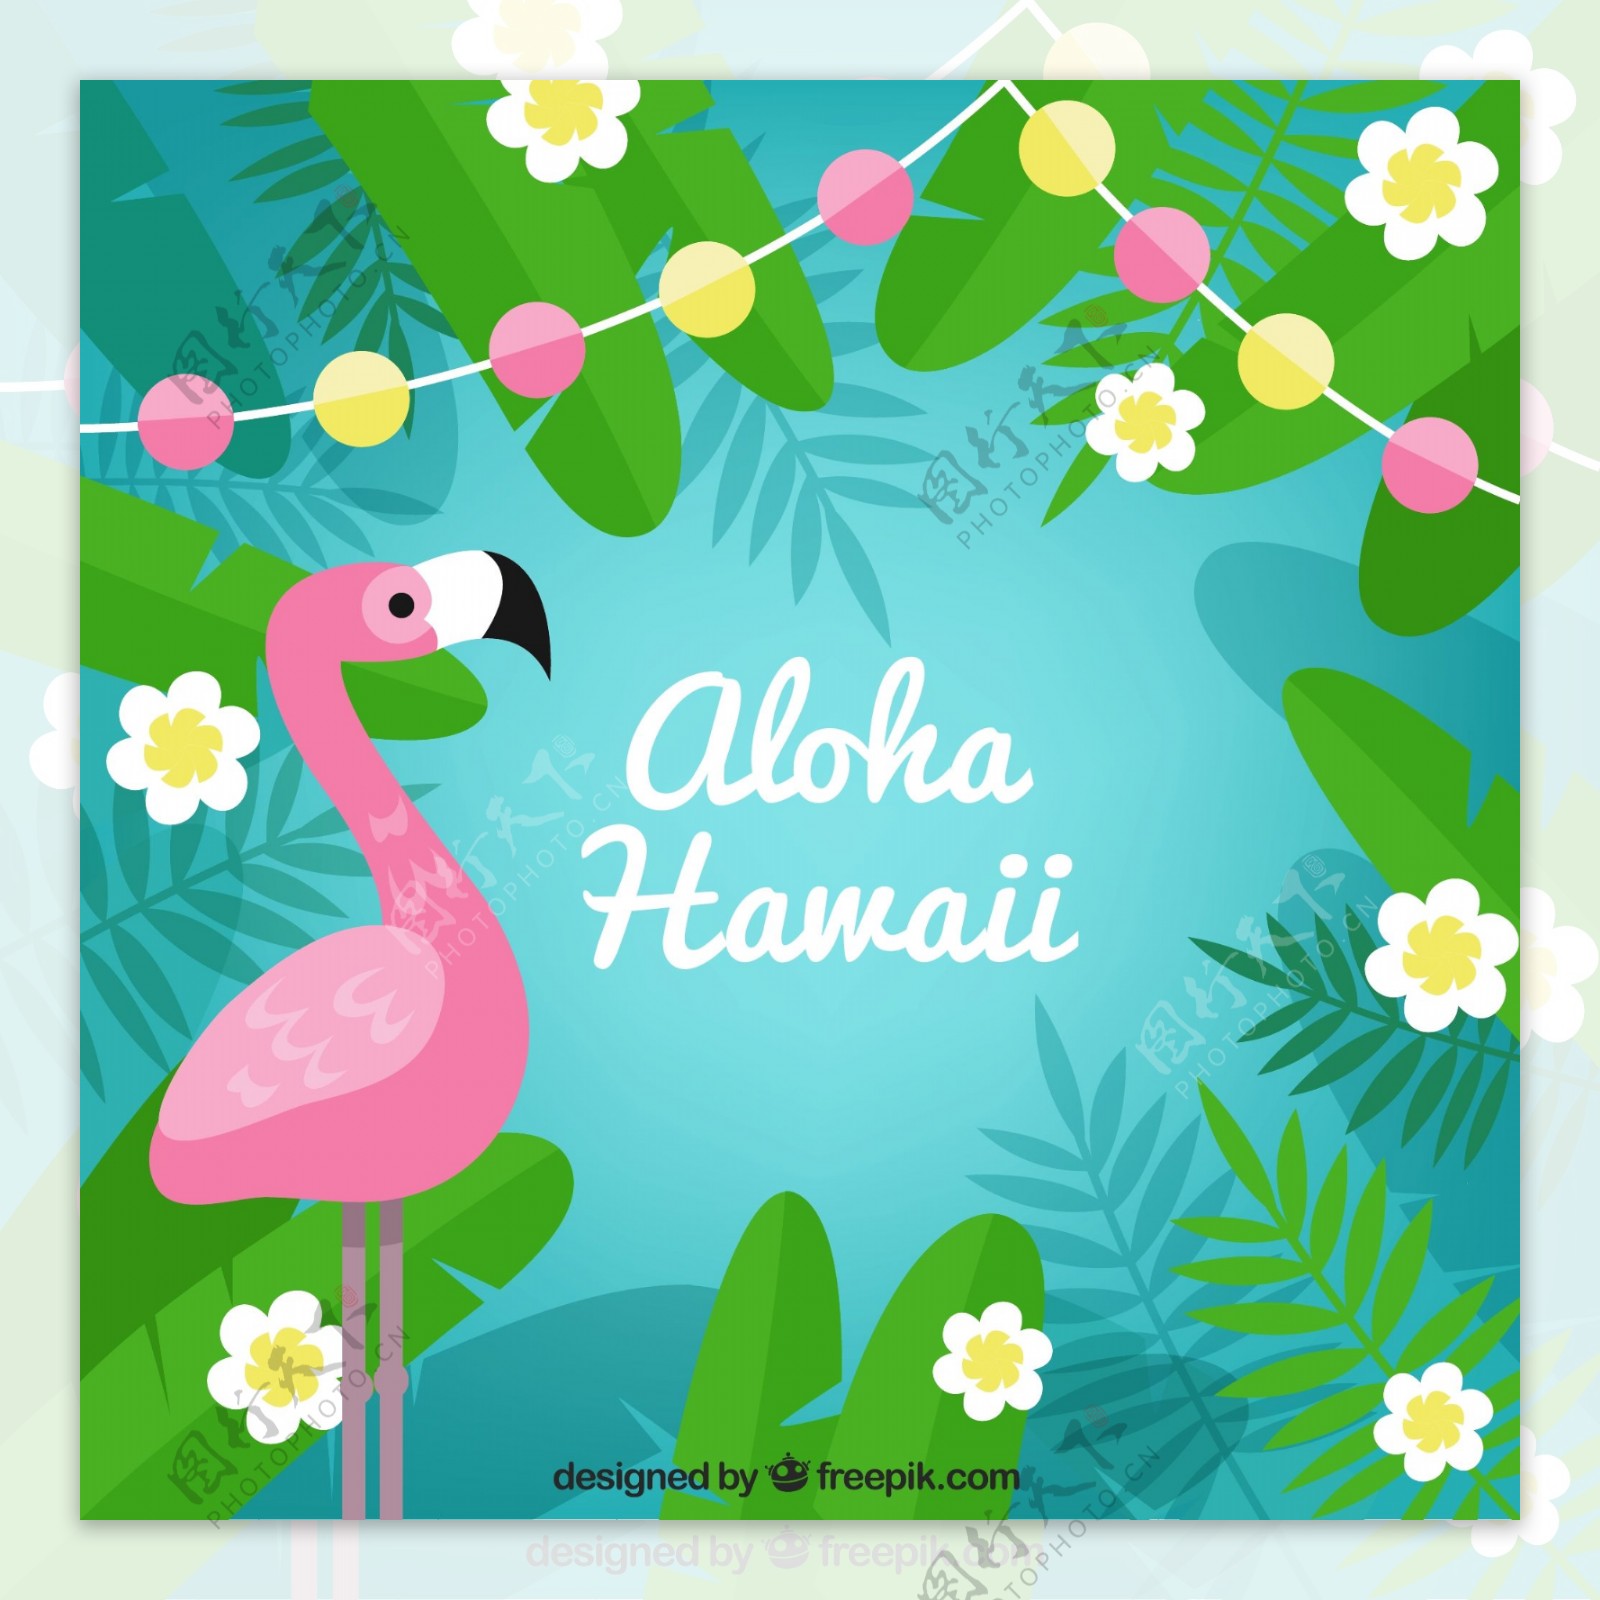 彩色夏威夷火烈鸟和花草